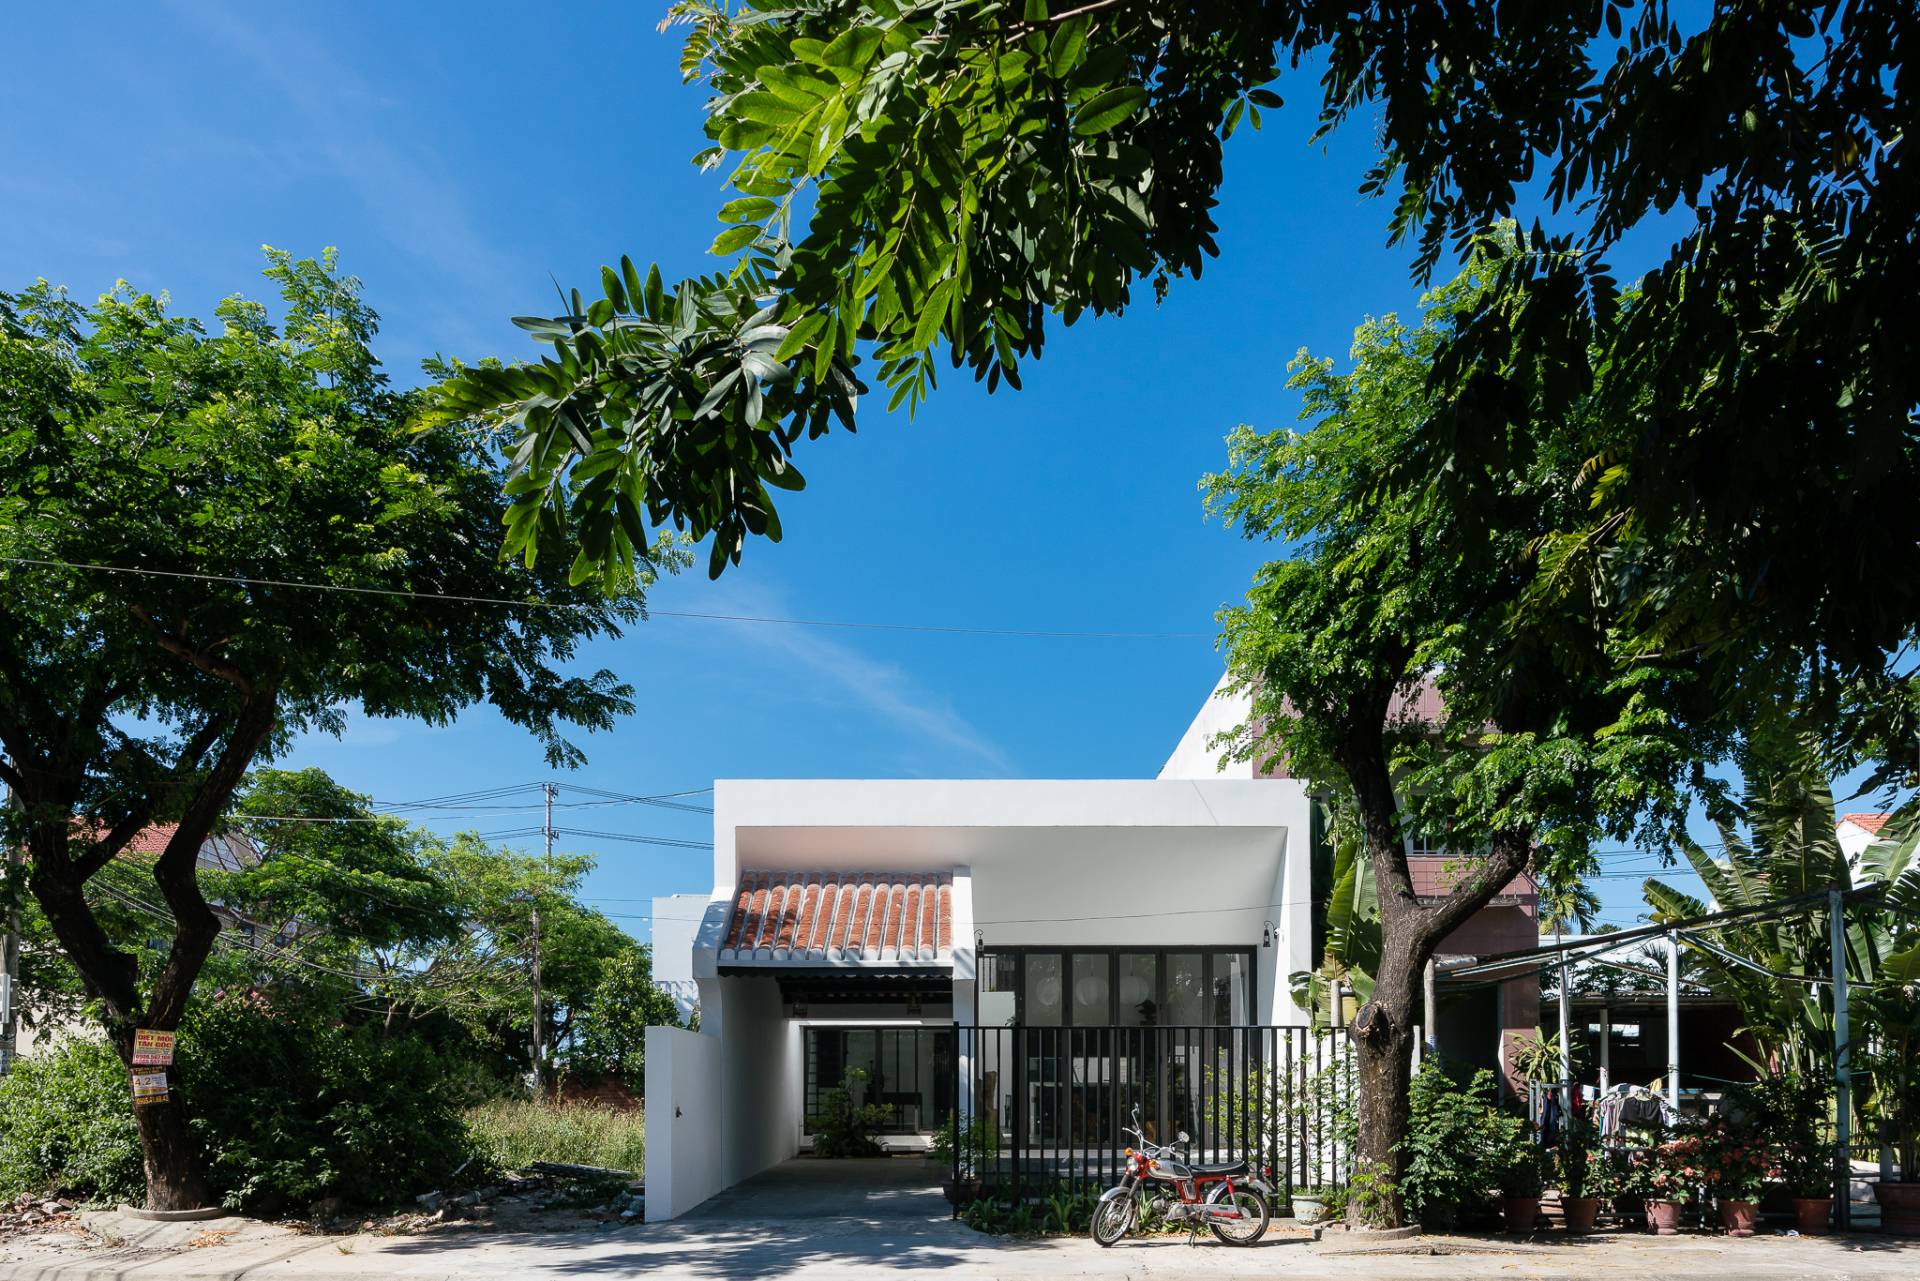 1 9 - Ghé thăm Khánh House: ngôi nhà vườn đánh thức tình yêu của biết bao người nhờ vận dụng sáng tạo kiến trúc Hội An xưa